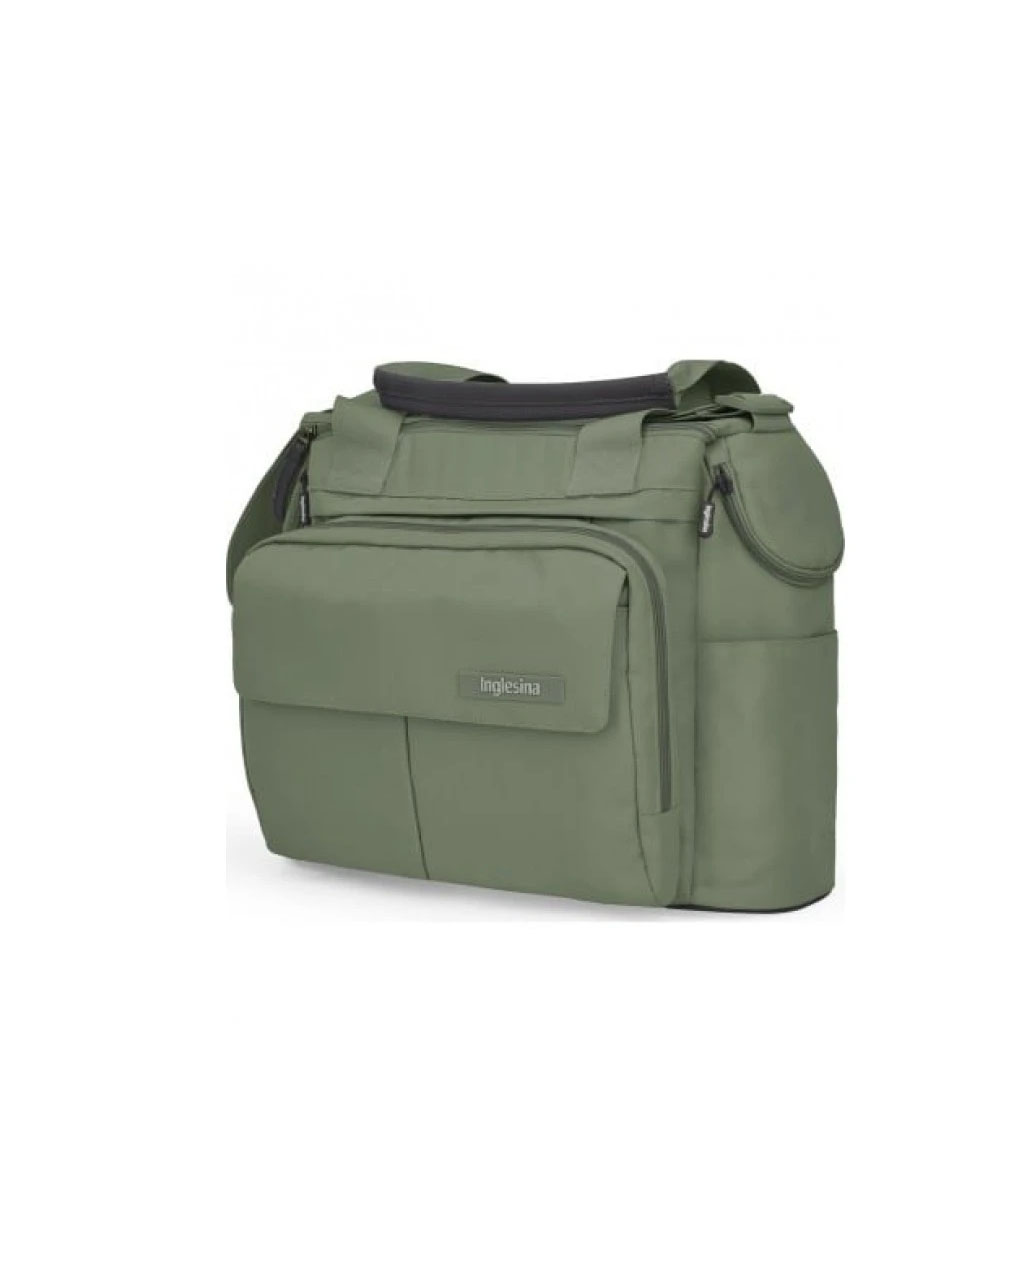 Inglesina τσάντα-αλλαξιέρα dual bag electa tribeca green - Inglesina